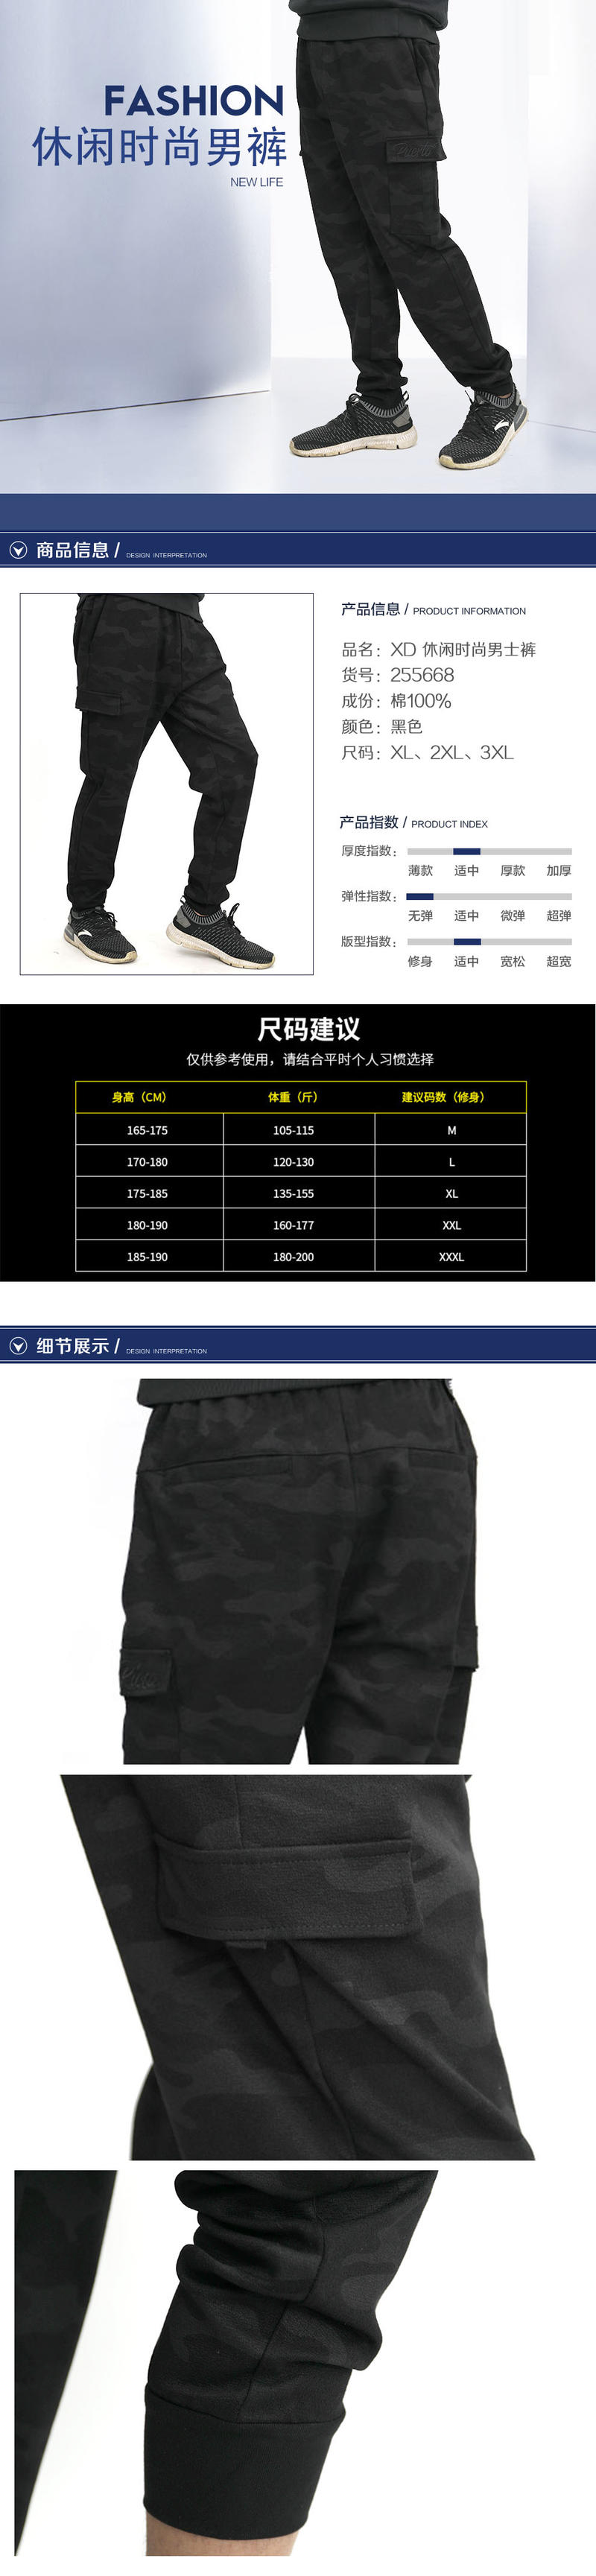 XD 男裤休闲时尚男士裤255668